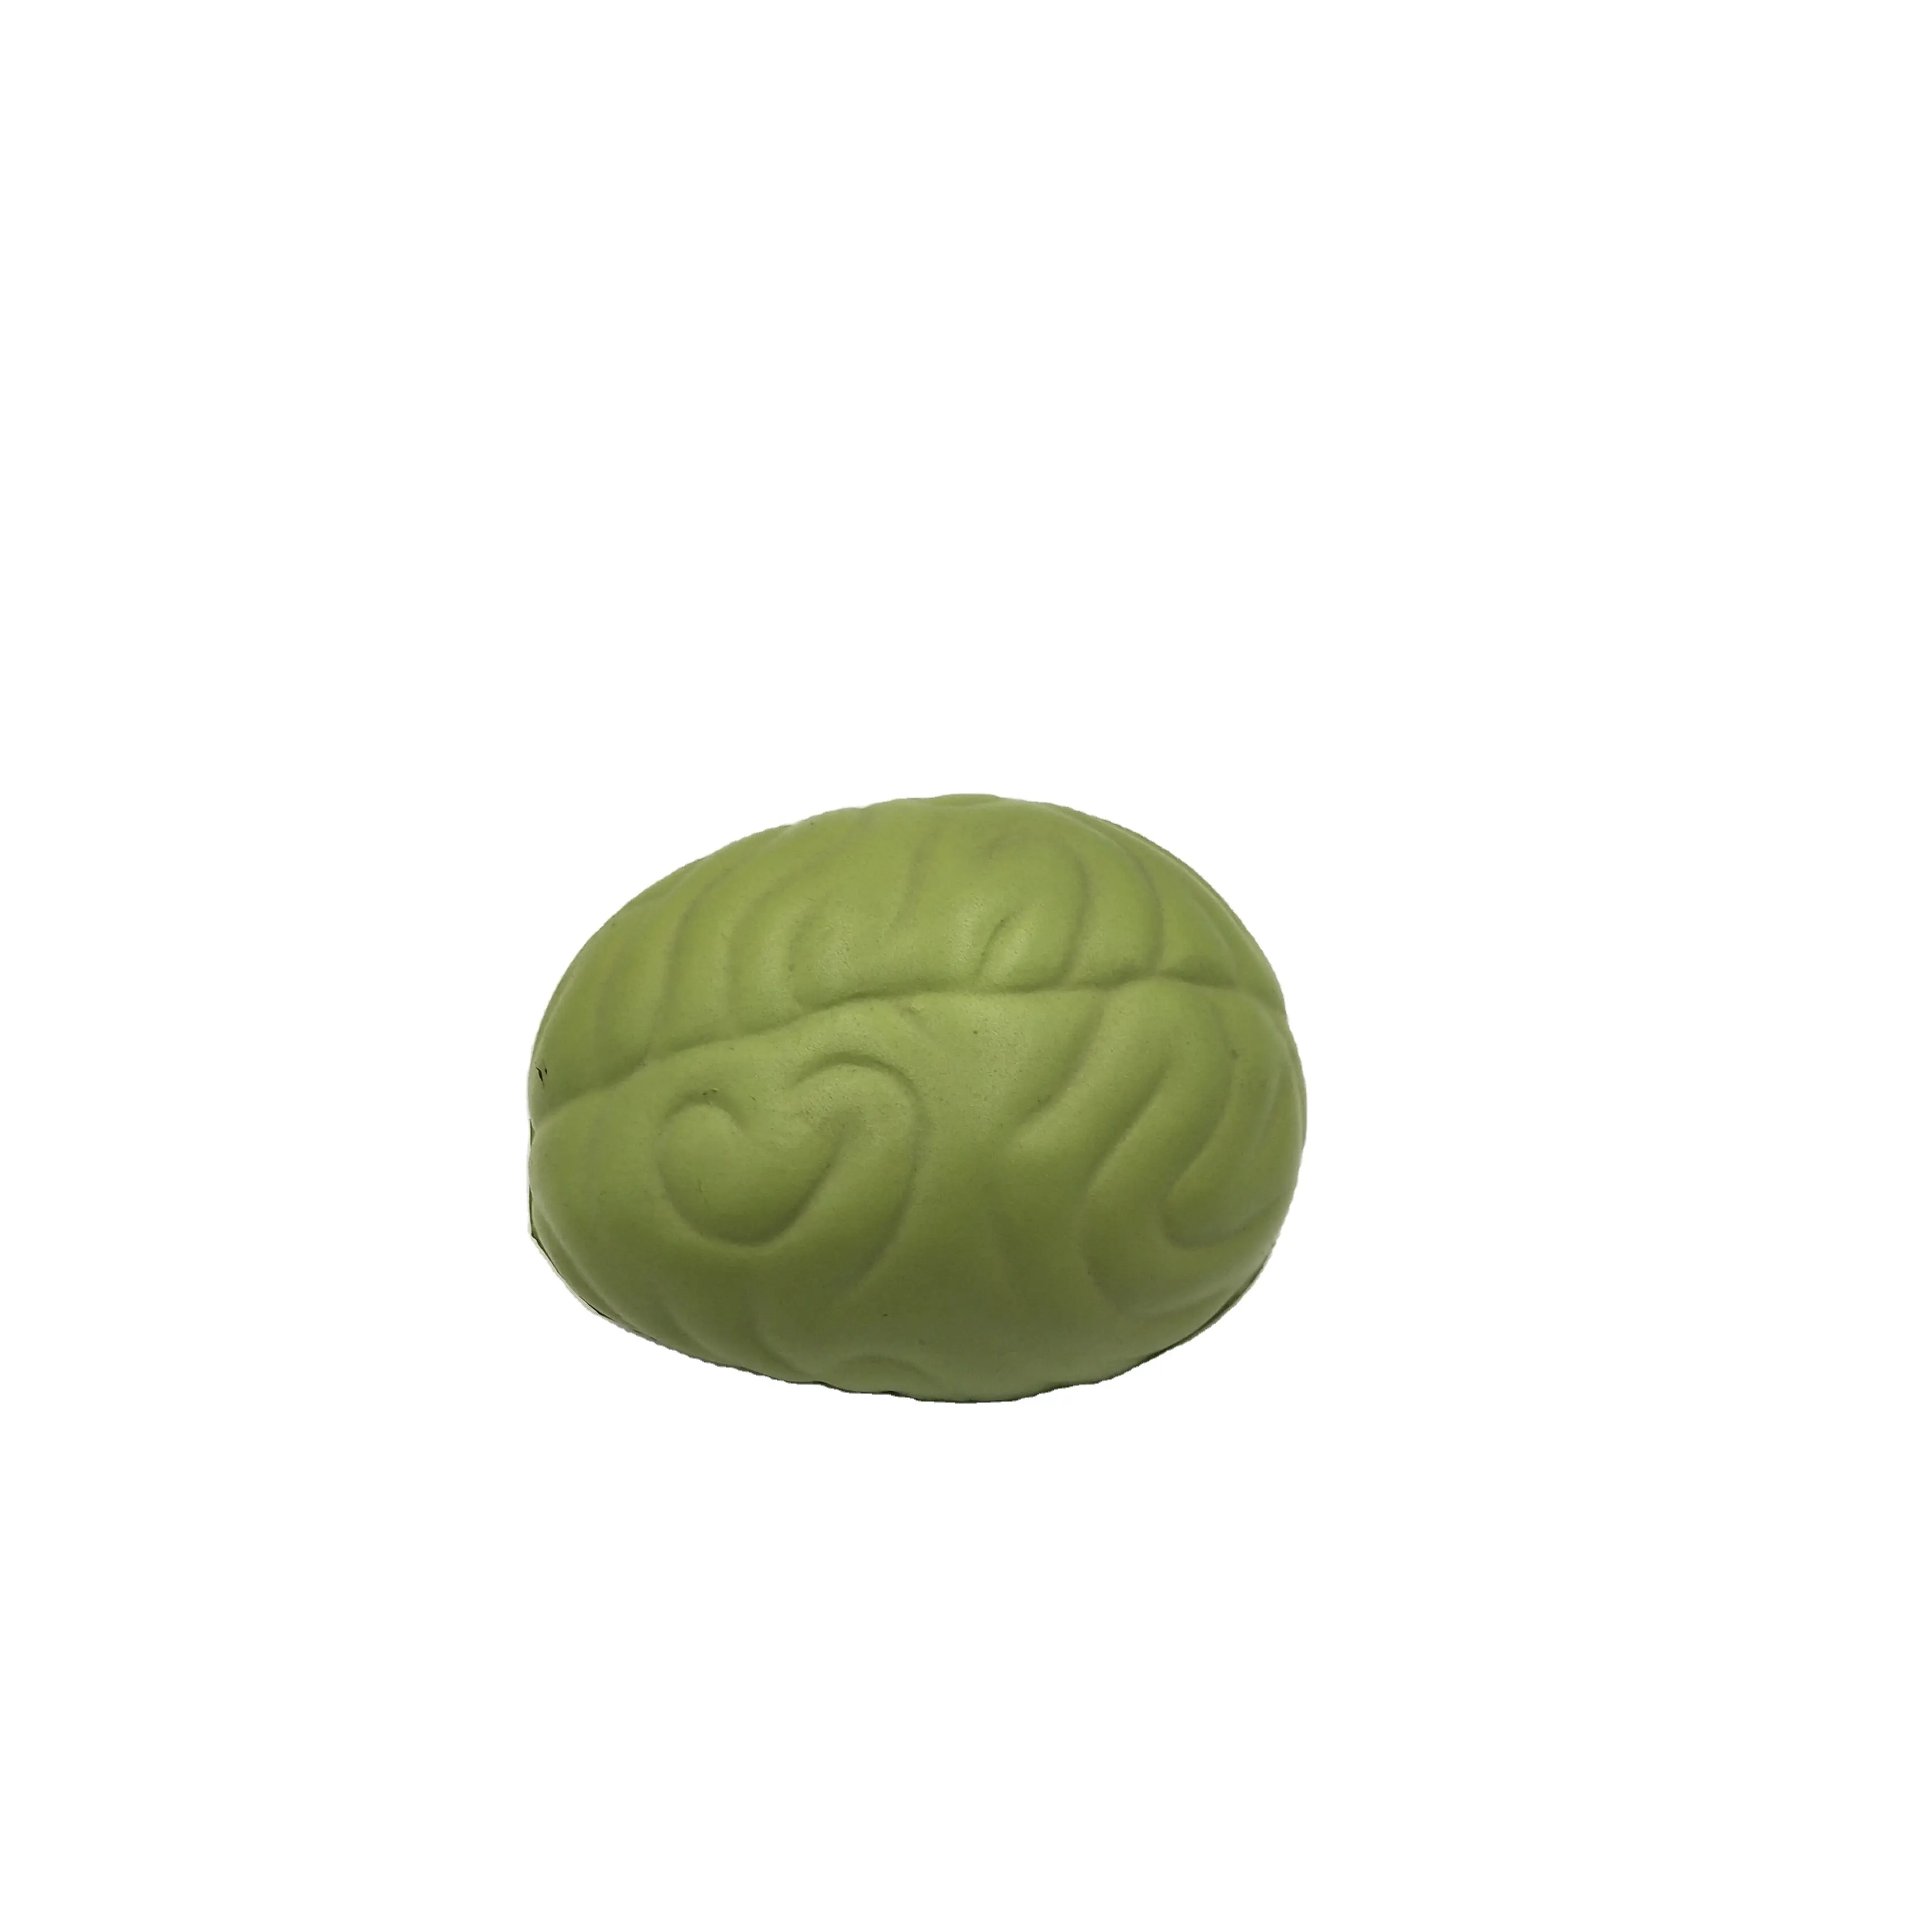 Factory Custom ized Organ Brain Toy Neuestes Squishy Brain Toy Für Kinder und Erwachsene Stress ball